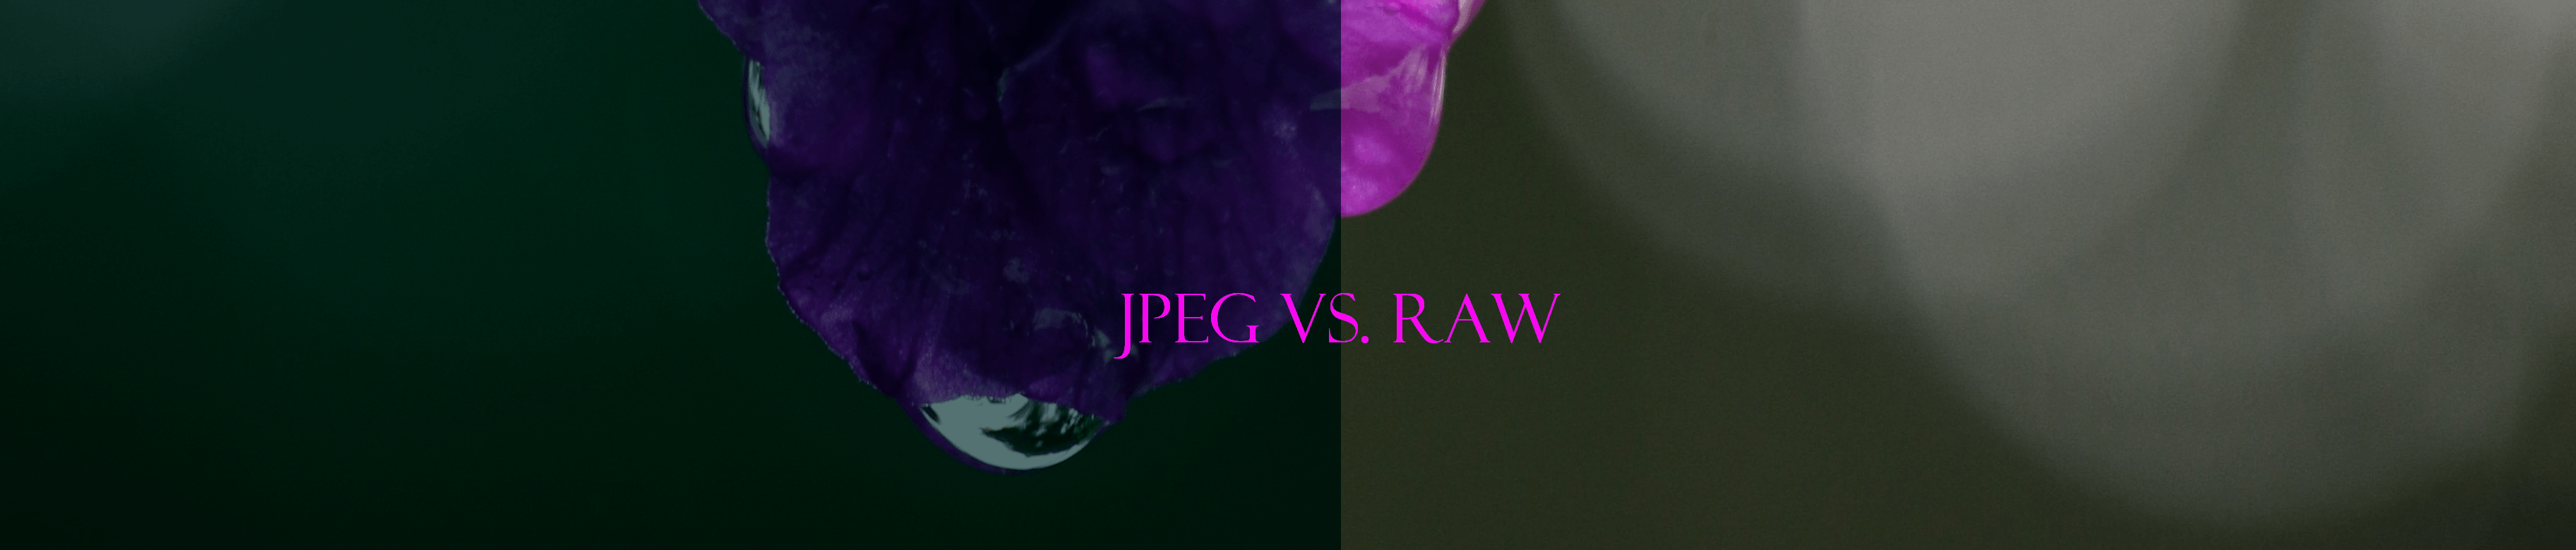 RAW or JPEG?